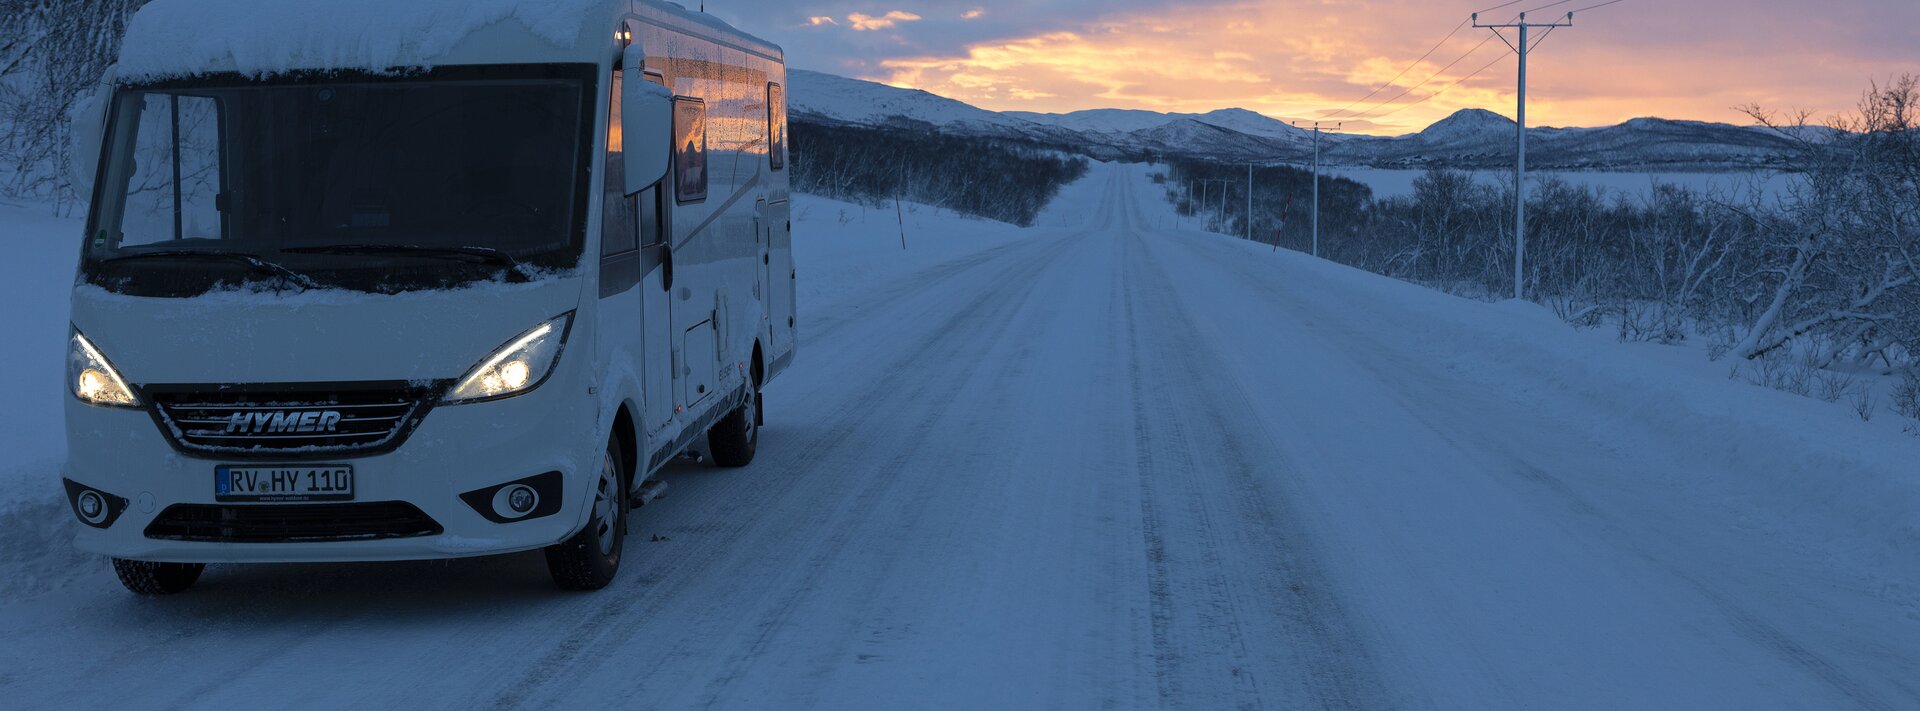 Hymermobil Exsis-i auf schneebedeckter Straße mit Stromleitung daneben und Hügeln im Hintergrund, bewölkte Abendsonne